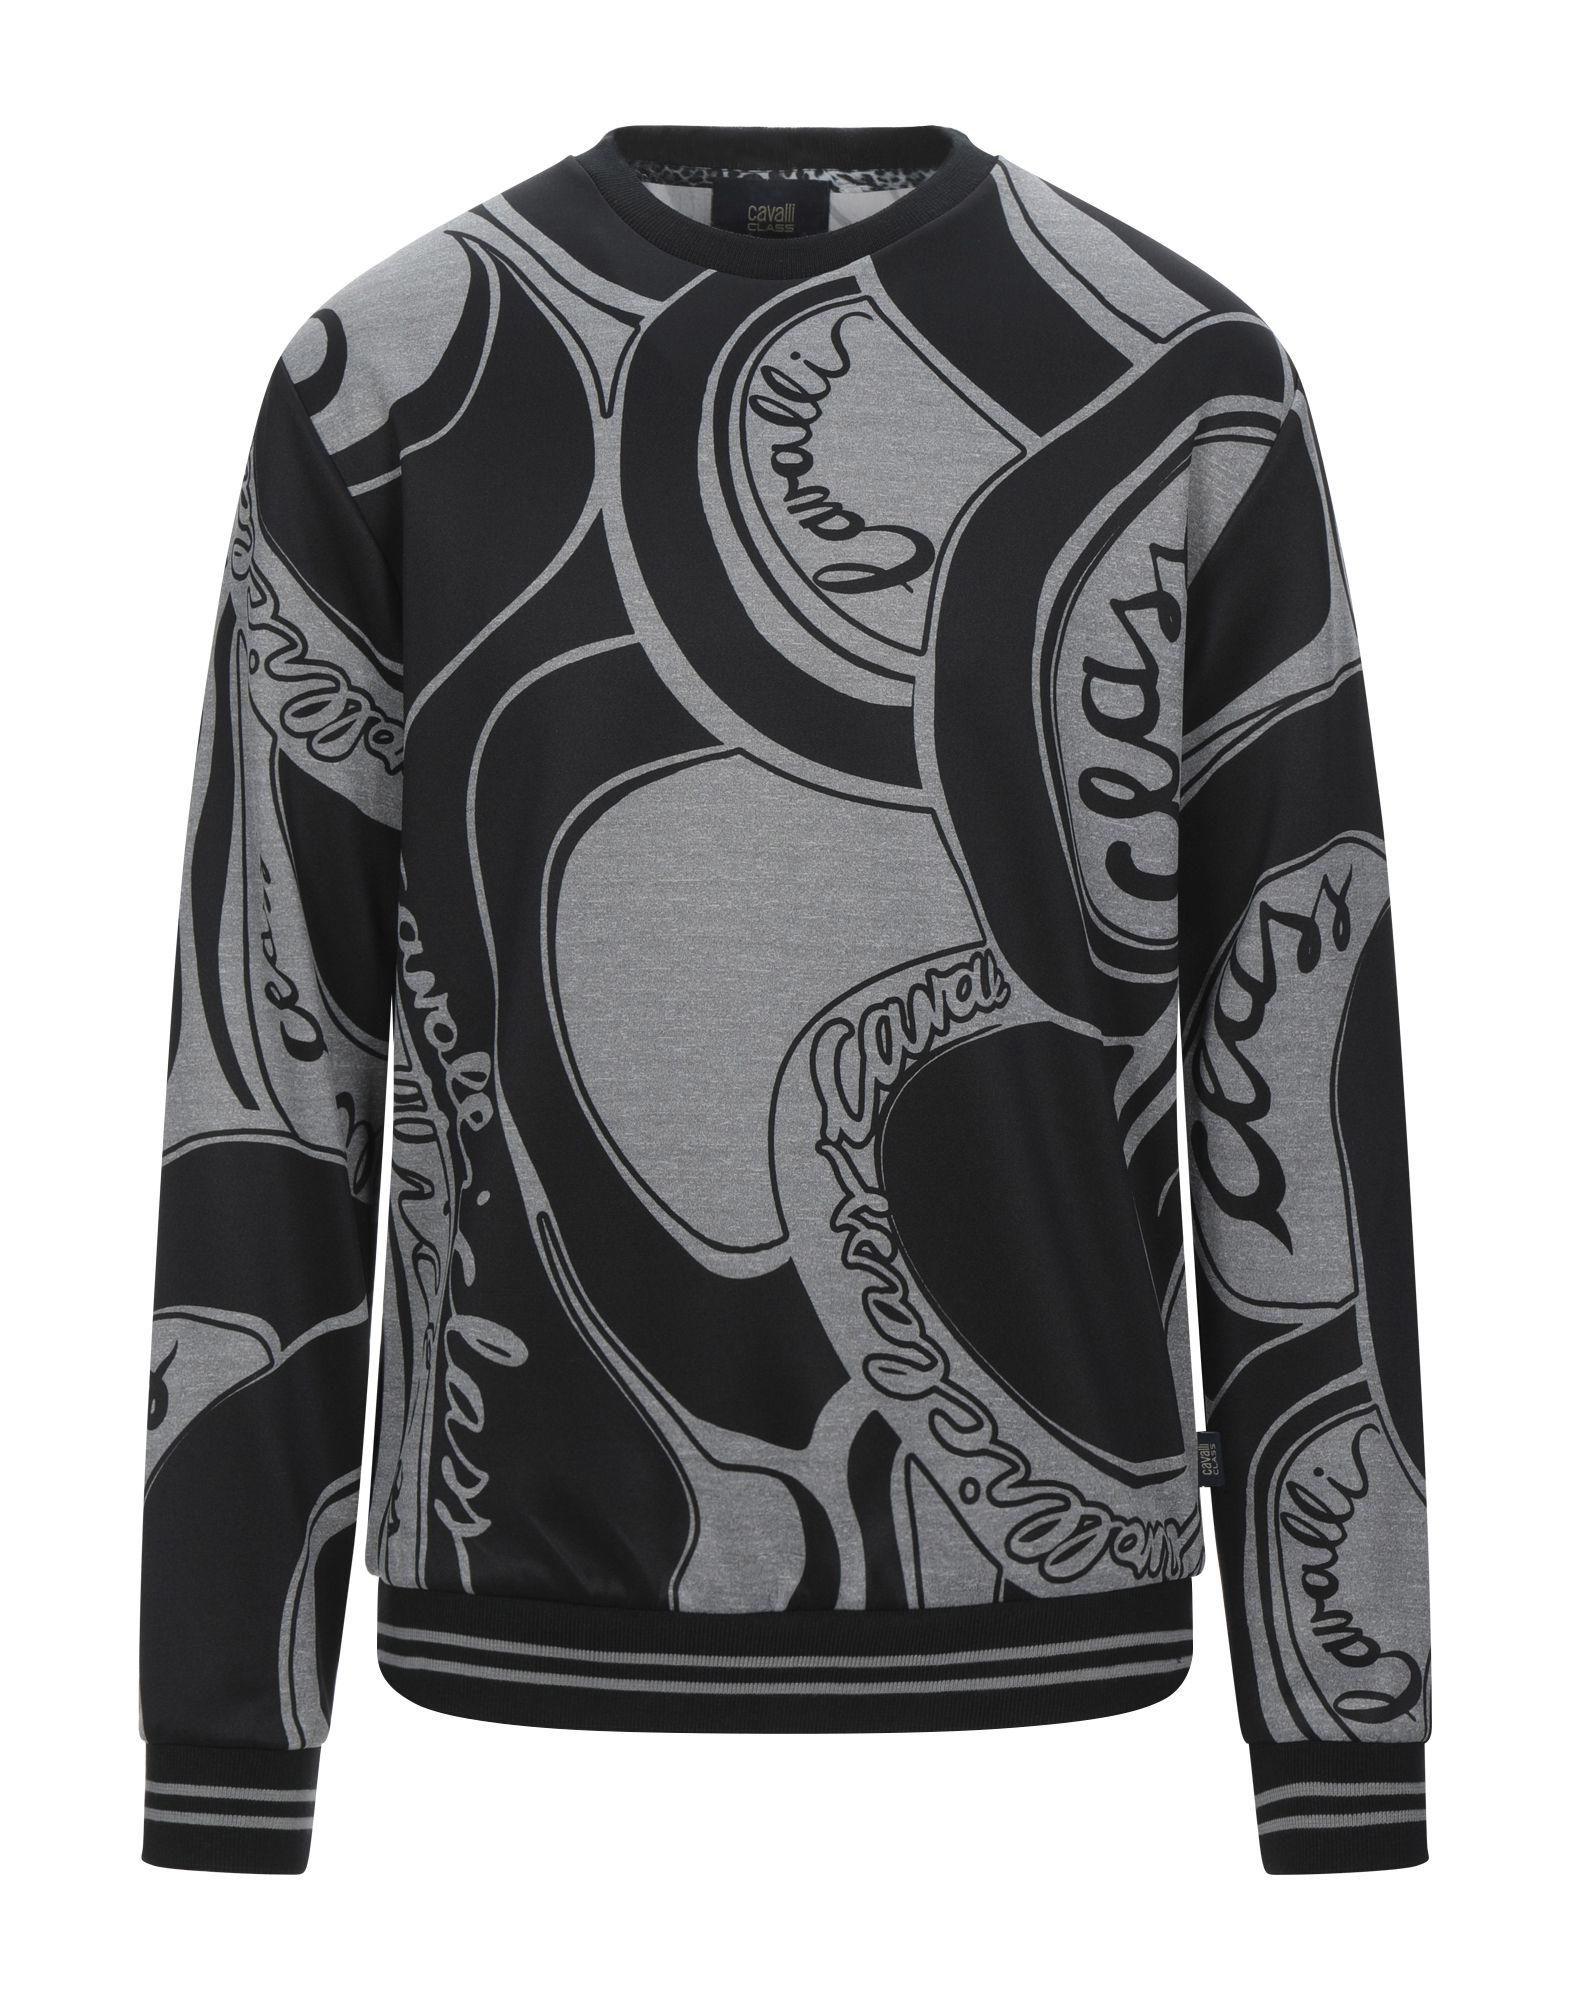 Class Roberto Cavalli Sweatshirt in Black for Men - Lyst